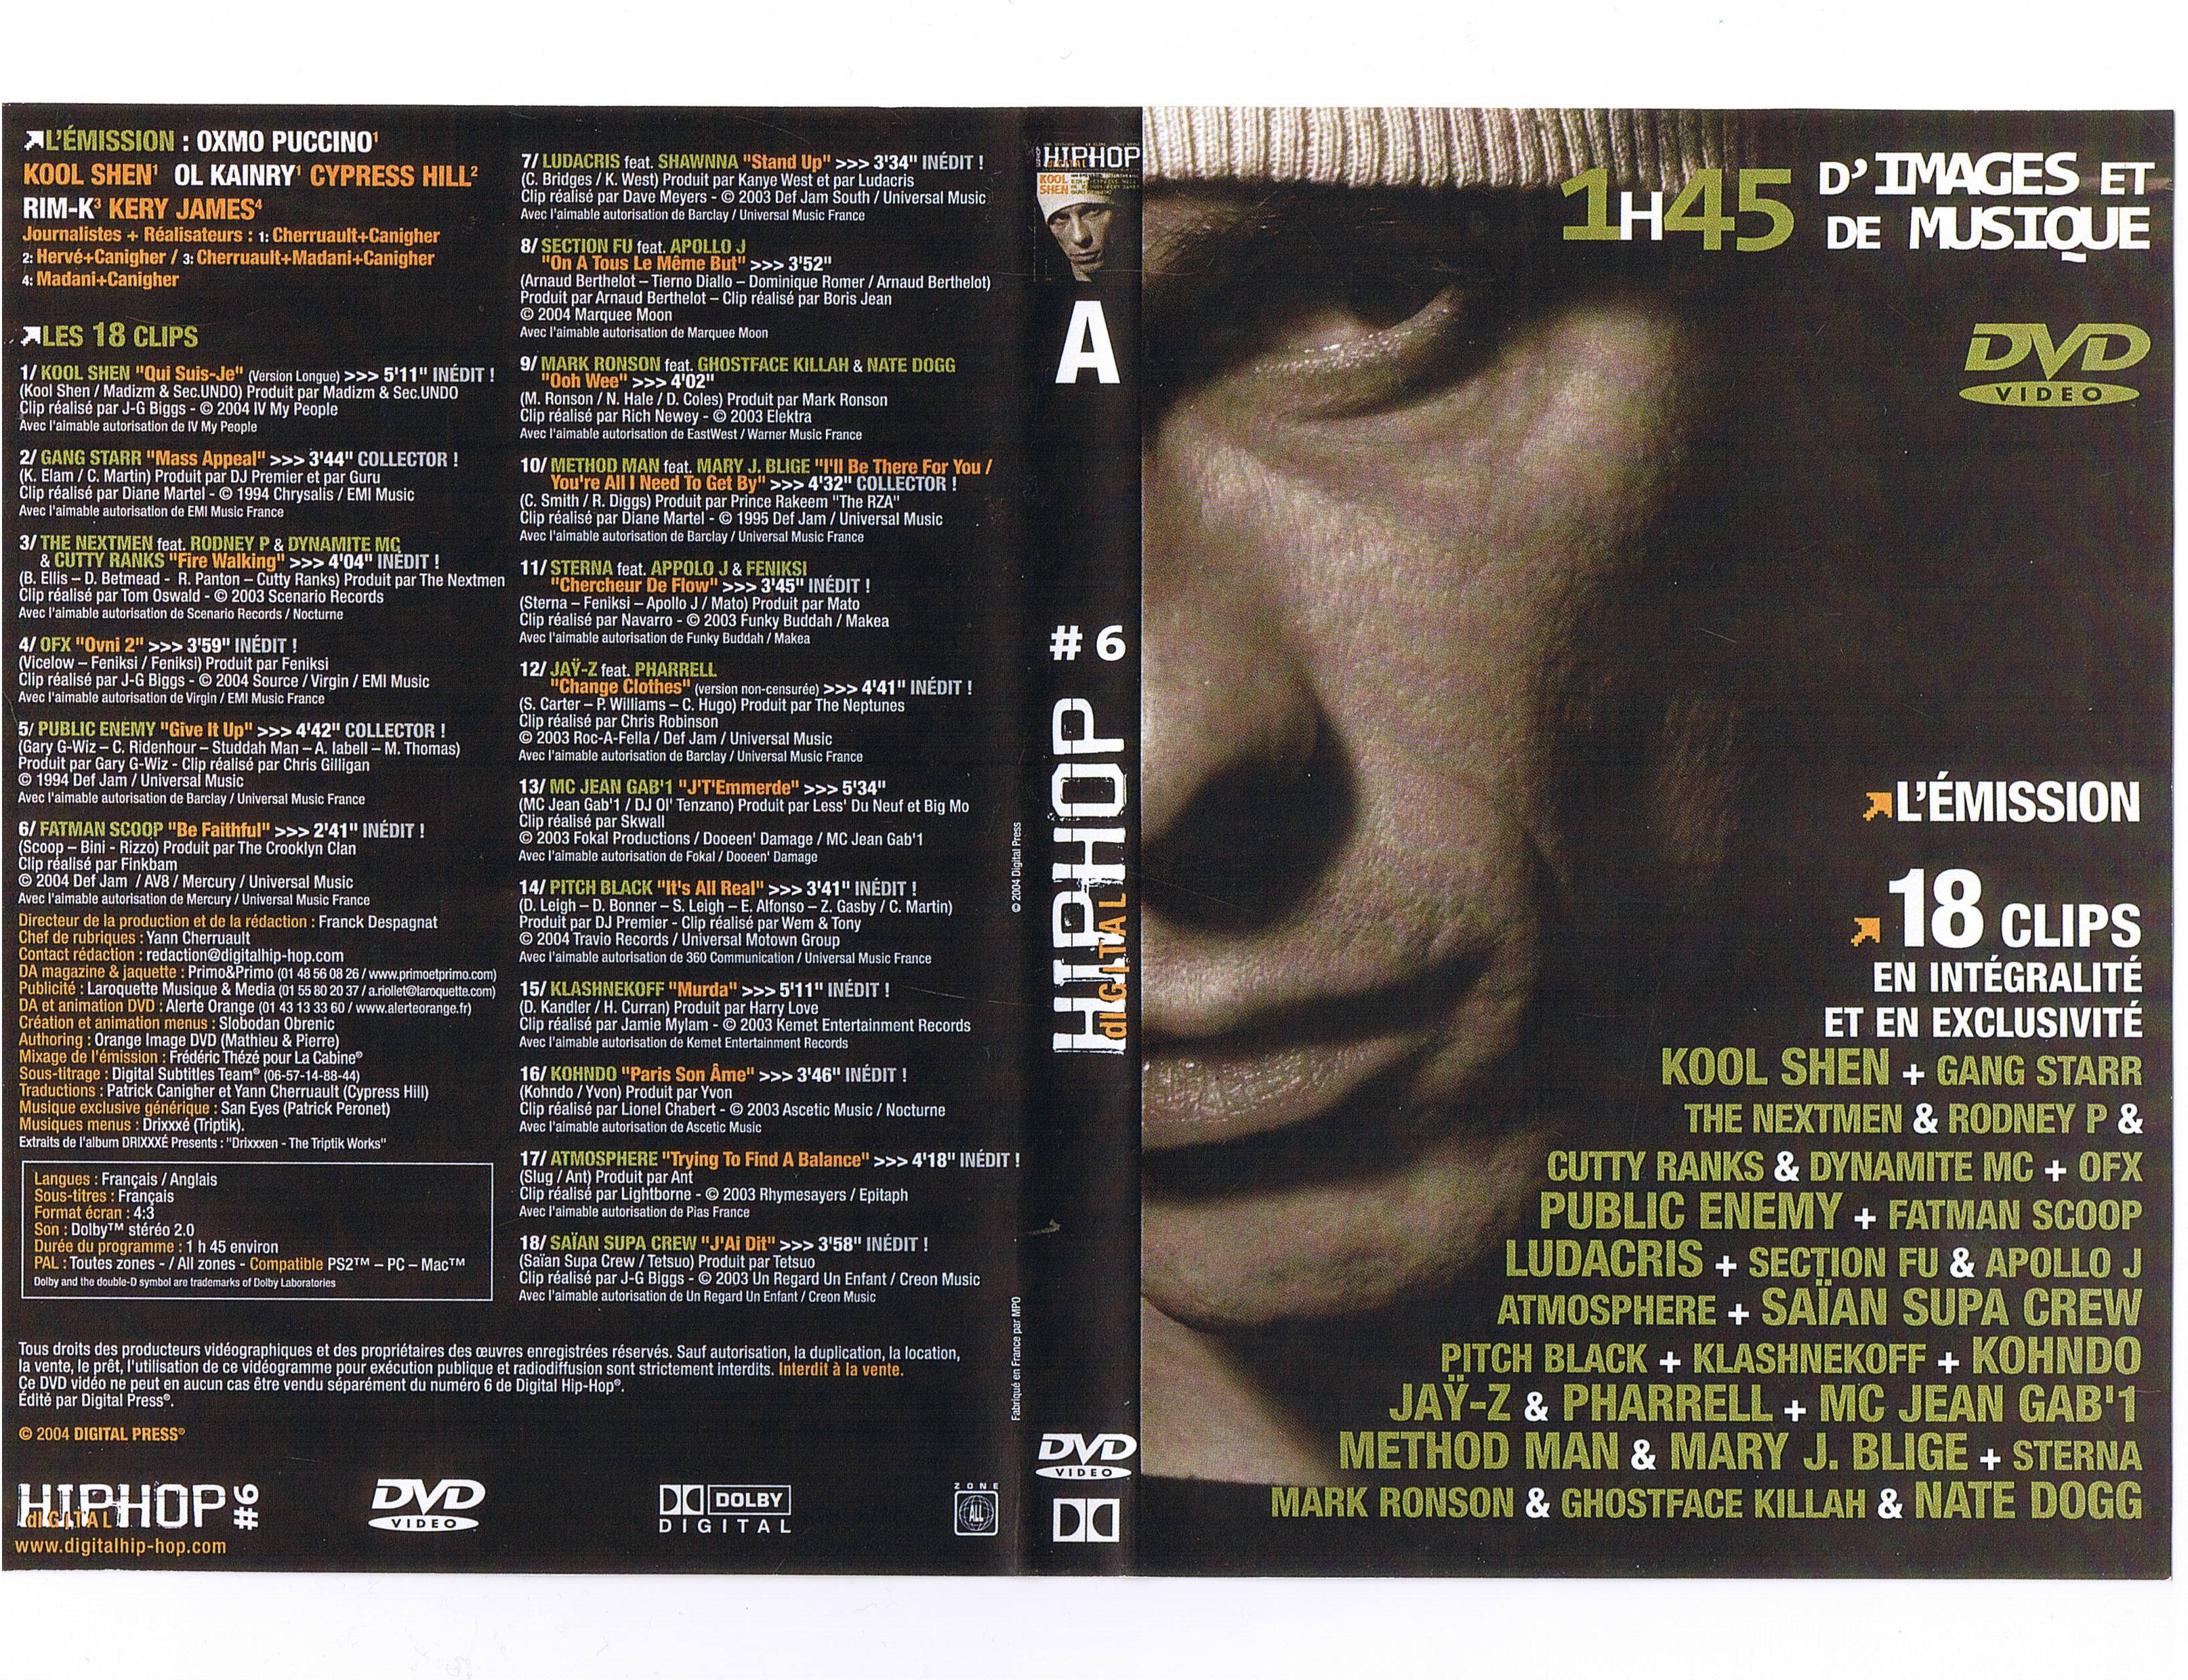 Jaquette DVD Digital hip hop vol 06